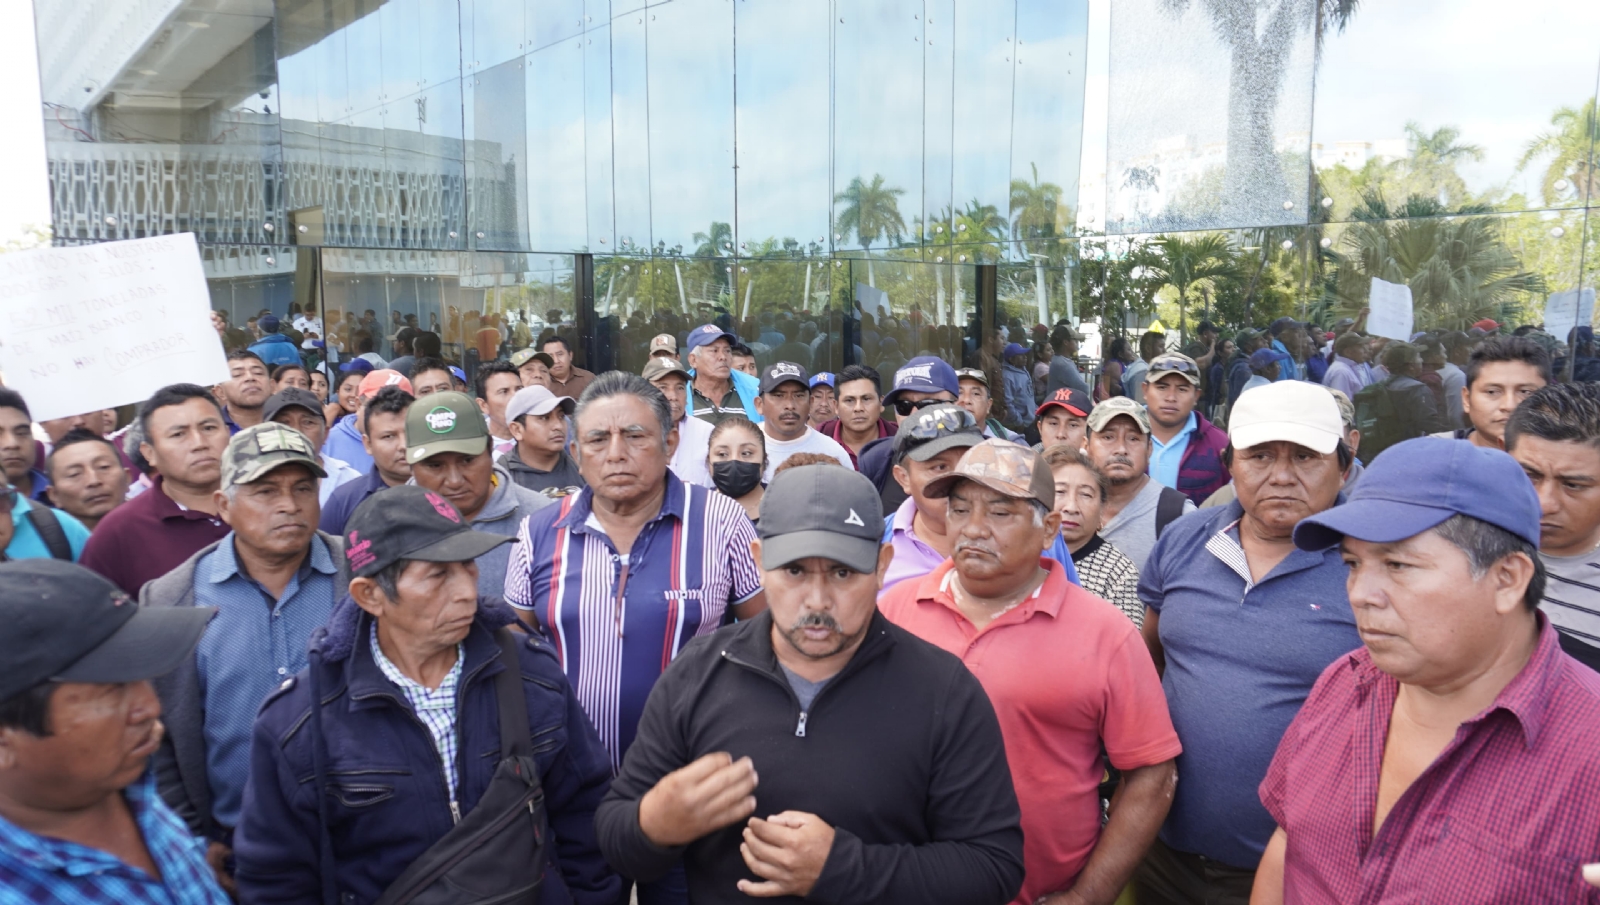 Campesinos de Hopelchén, Campeche, se manifiestan para solicitar apoyo de las autoridades: VIDEO